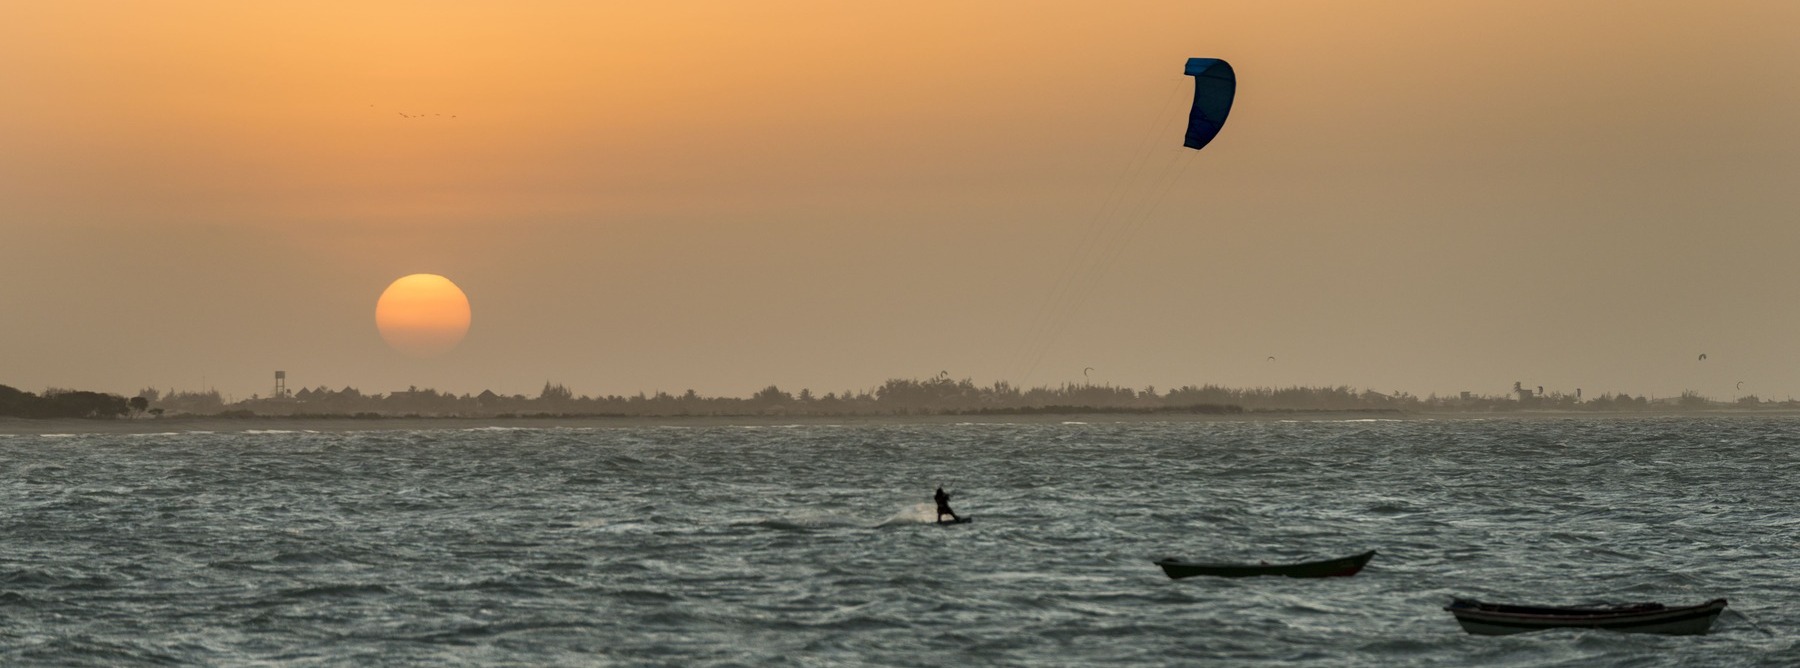 Fim de tarde em Barra Grande, Piauí. Por do sol e praticante de kitesurf no mar. Pequenos barcos flutuando.